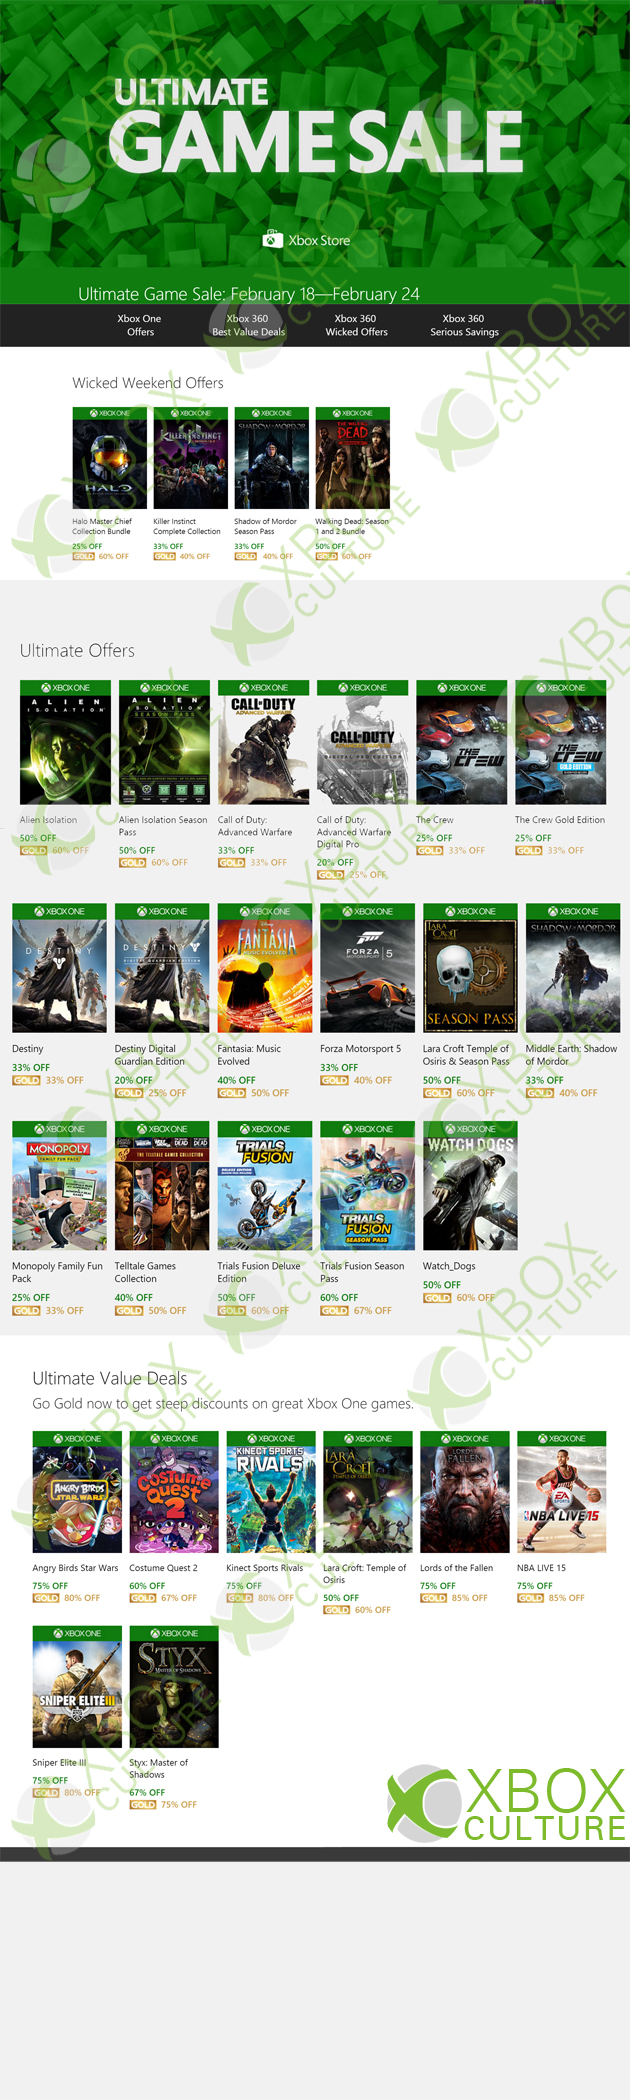 Xbox Culture desvela los Ultimate Game Sale del 18 al 24 de febrero 2015.